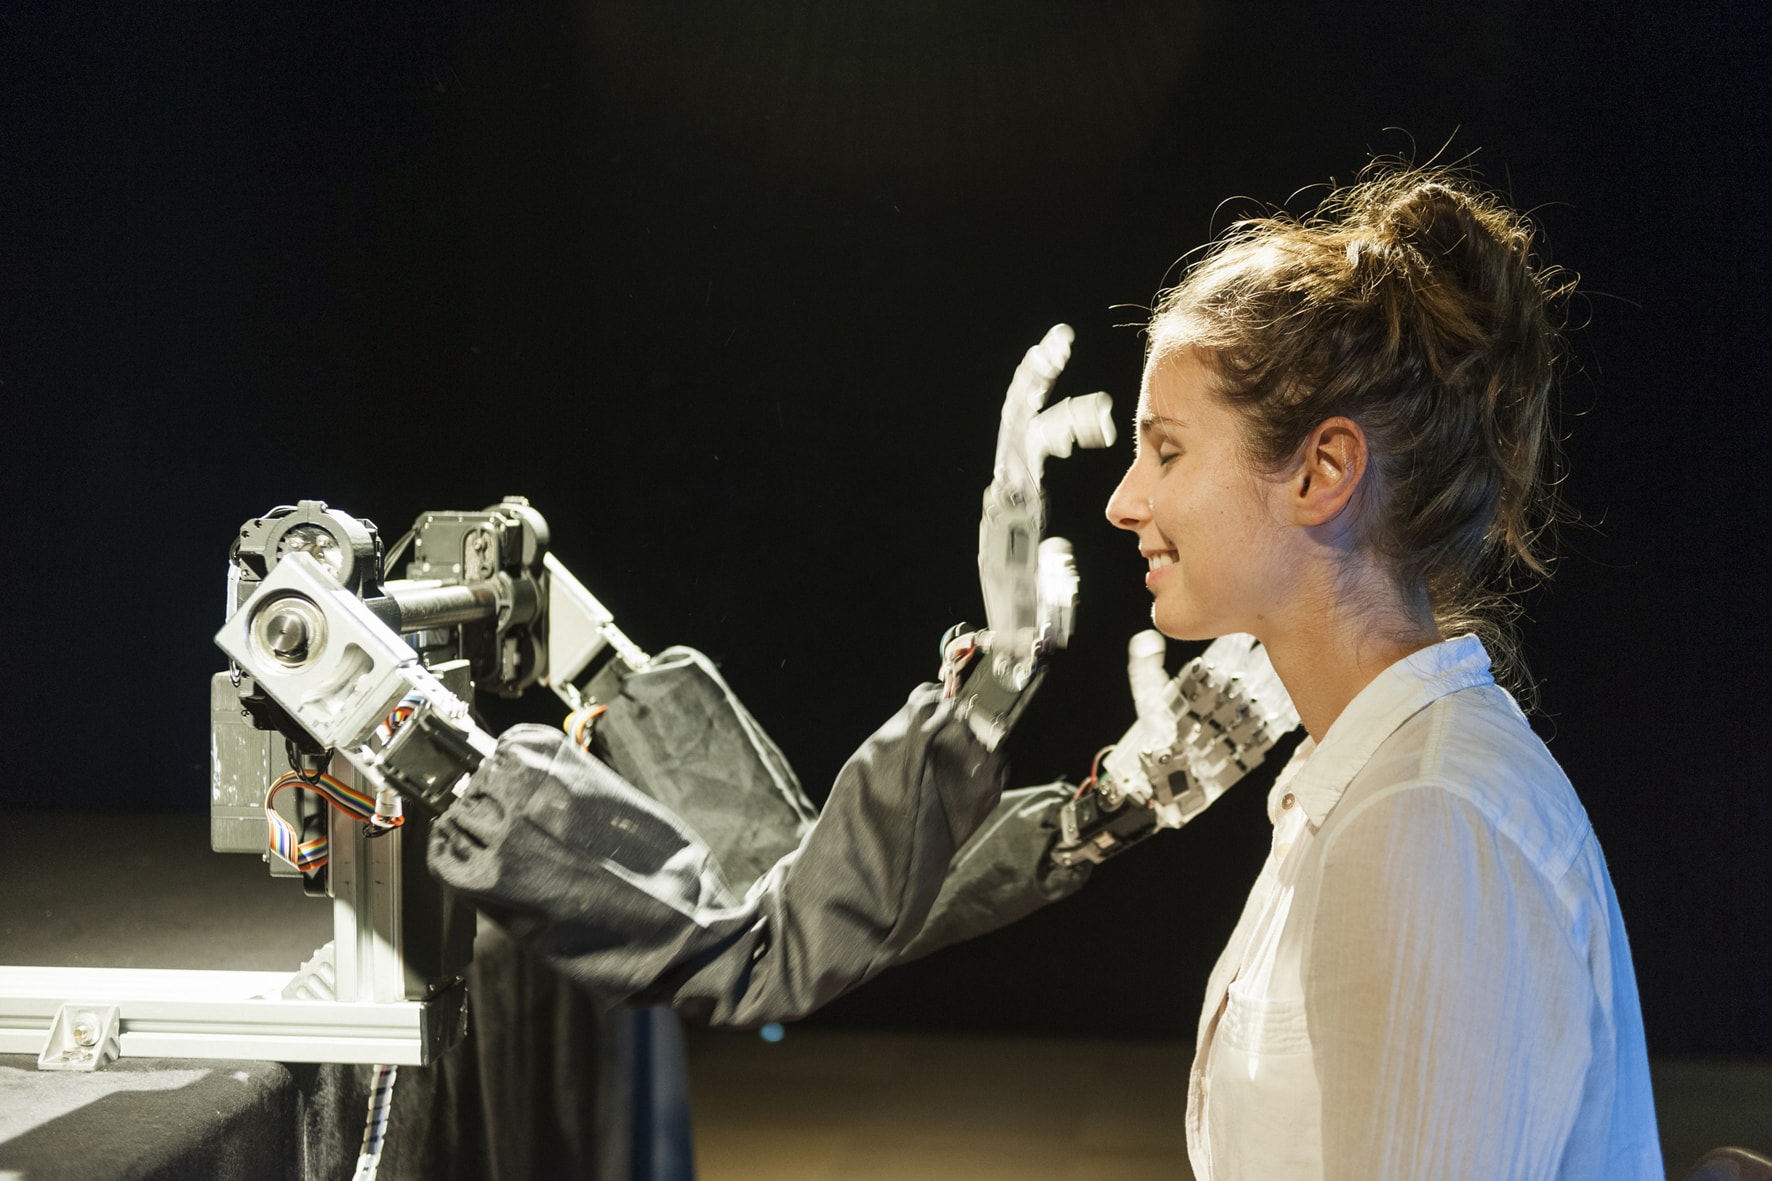 Луи-Филипп Демер (Сингапур). «Слепой робот», 2012 г. Интерактивная робототехническая инсталляция. Смешанная техника. © 2014 г. Фото: Луи-Филипп Демер. 